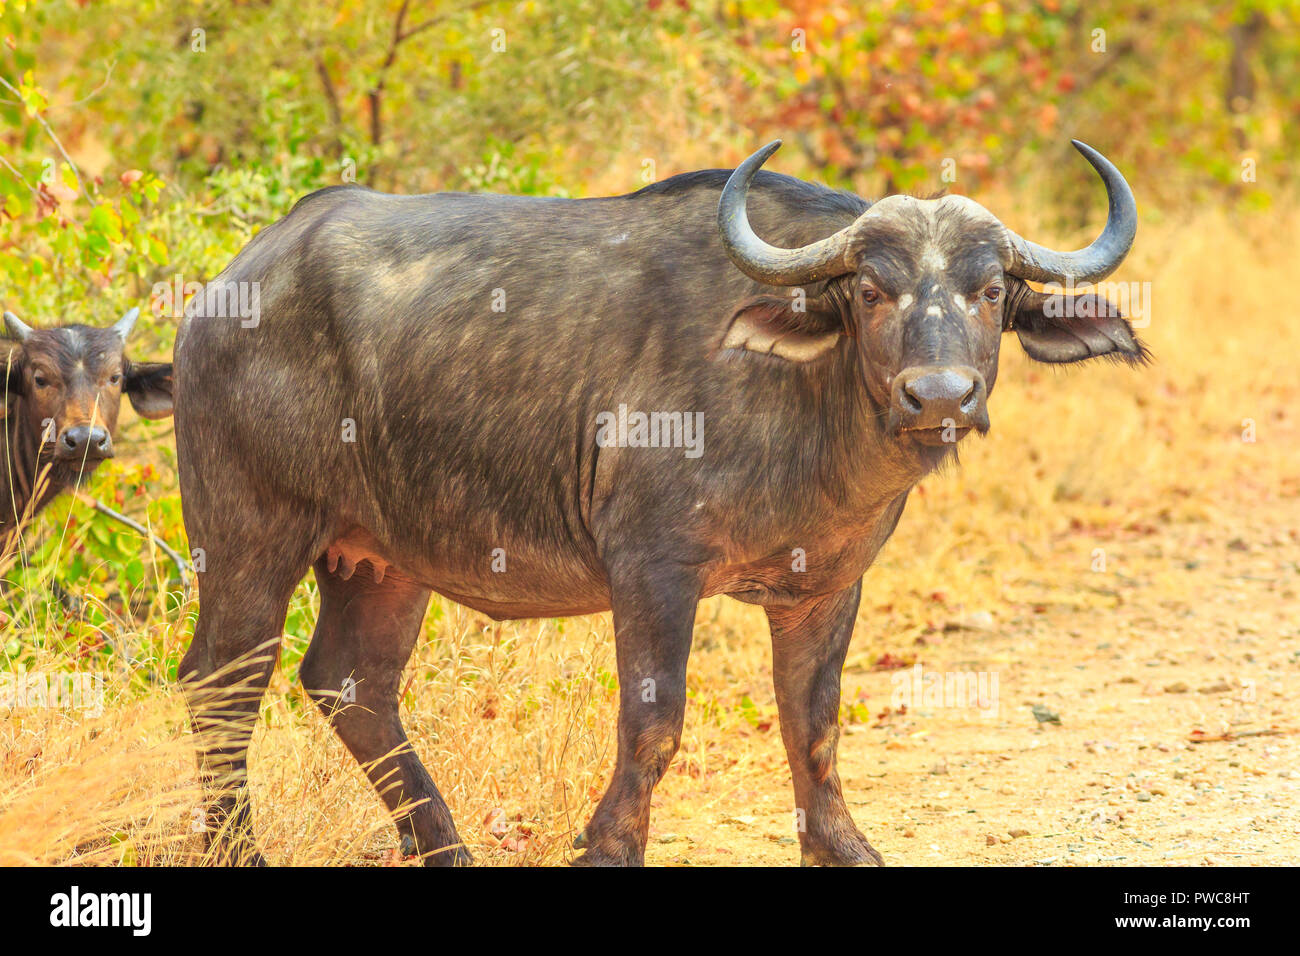 Männchen der afrikanischen Büffel Art Syncerus caffer, in der Natur stehen, trockenen Jahreszeit. Krüger Nationalpark in Südafrika. Der Büffel ist eine große afrikanische Rinder Teil der beliebten Big Five. Stockfoto